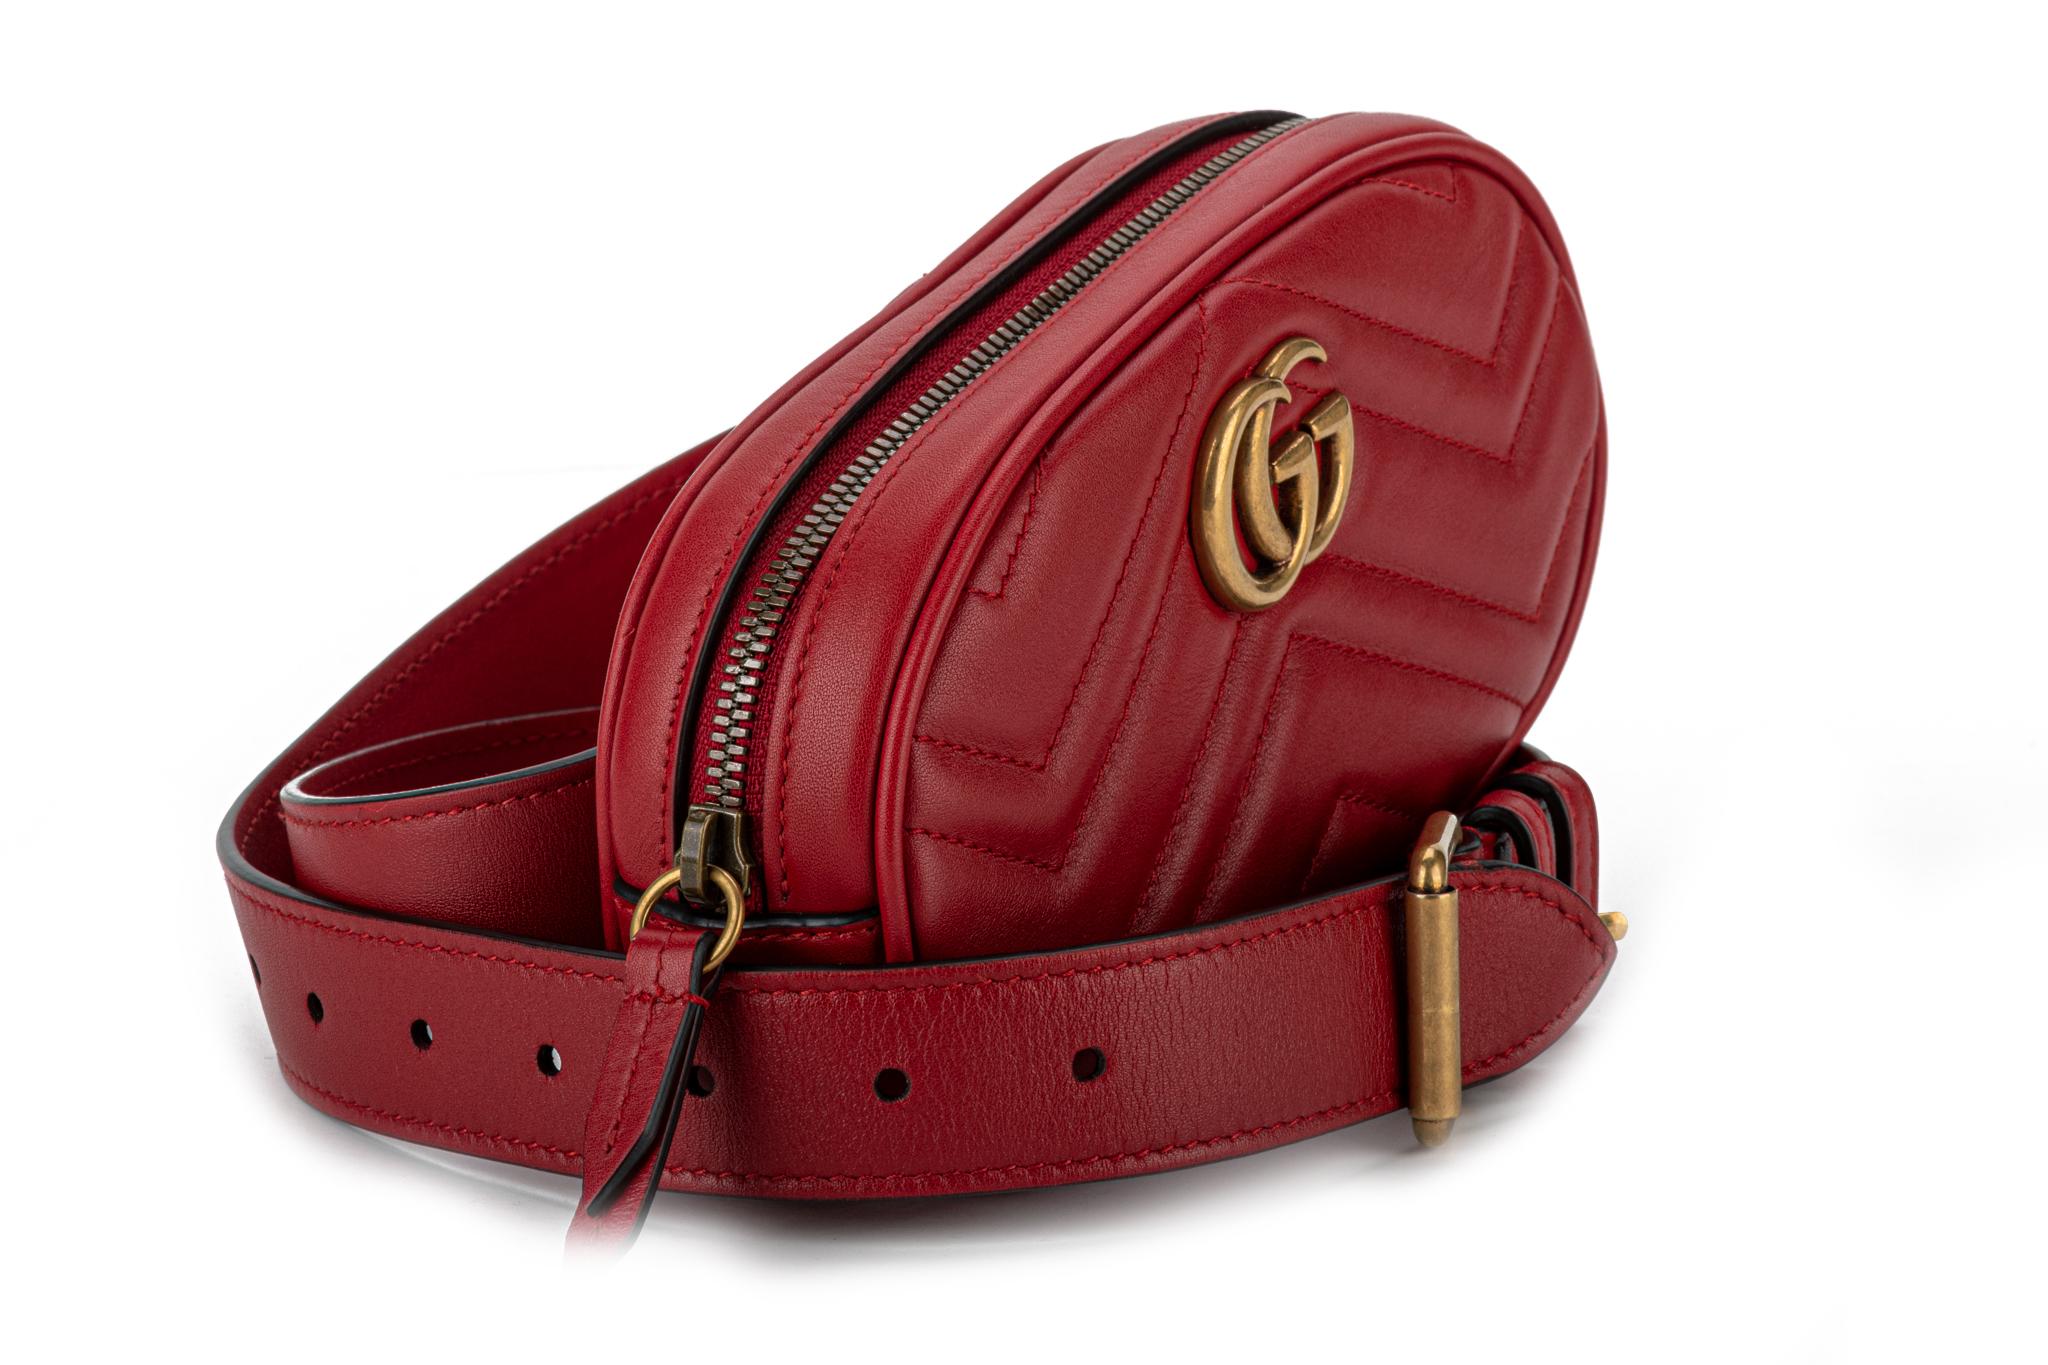 New, Red Gucci calfskin leather Matelasse GG belt bag. The adjustable belt measures 44.25